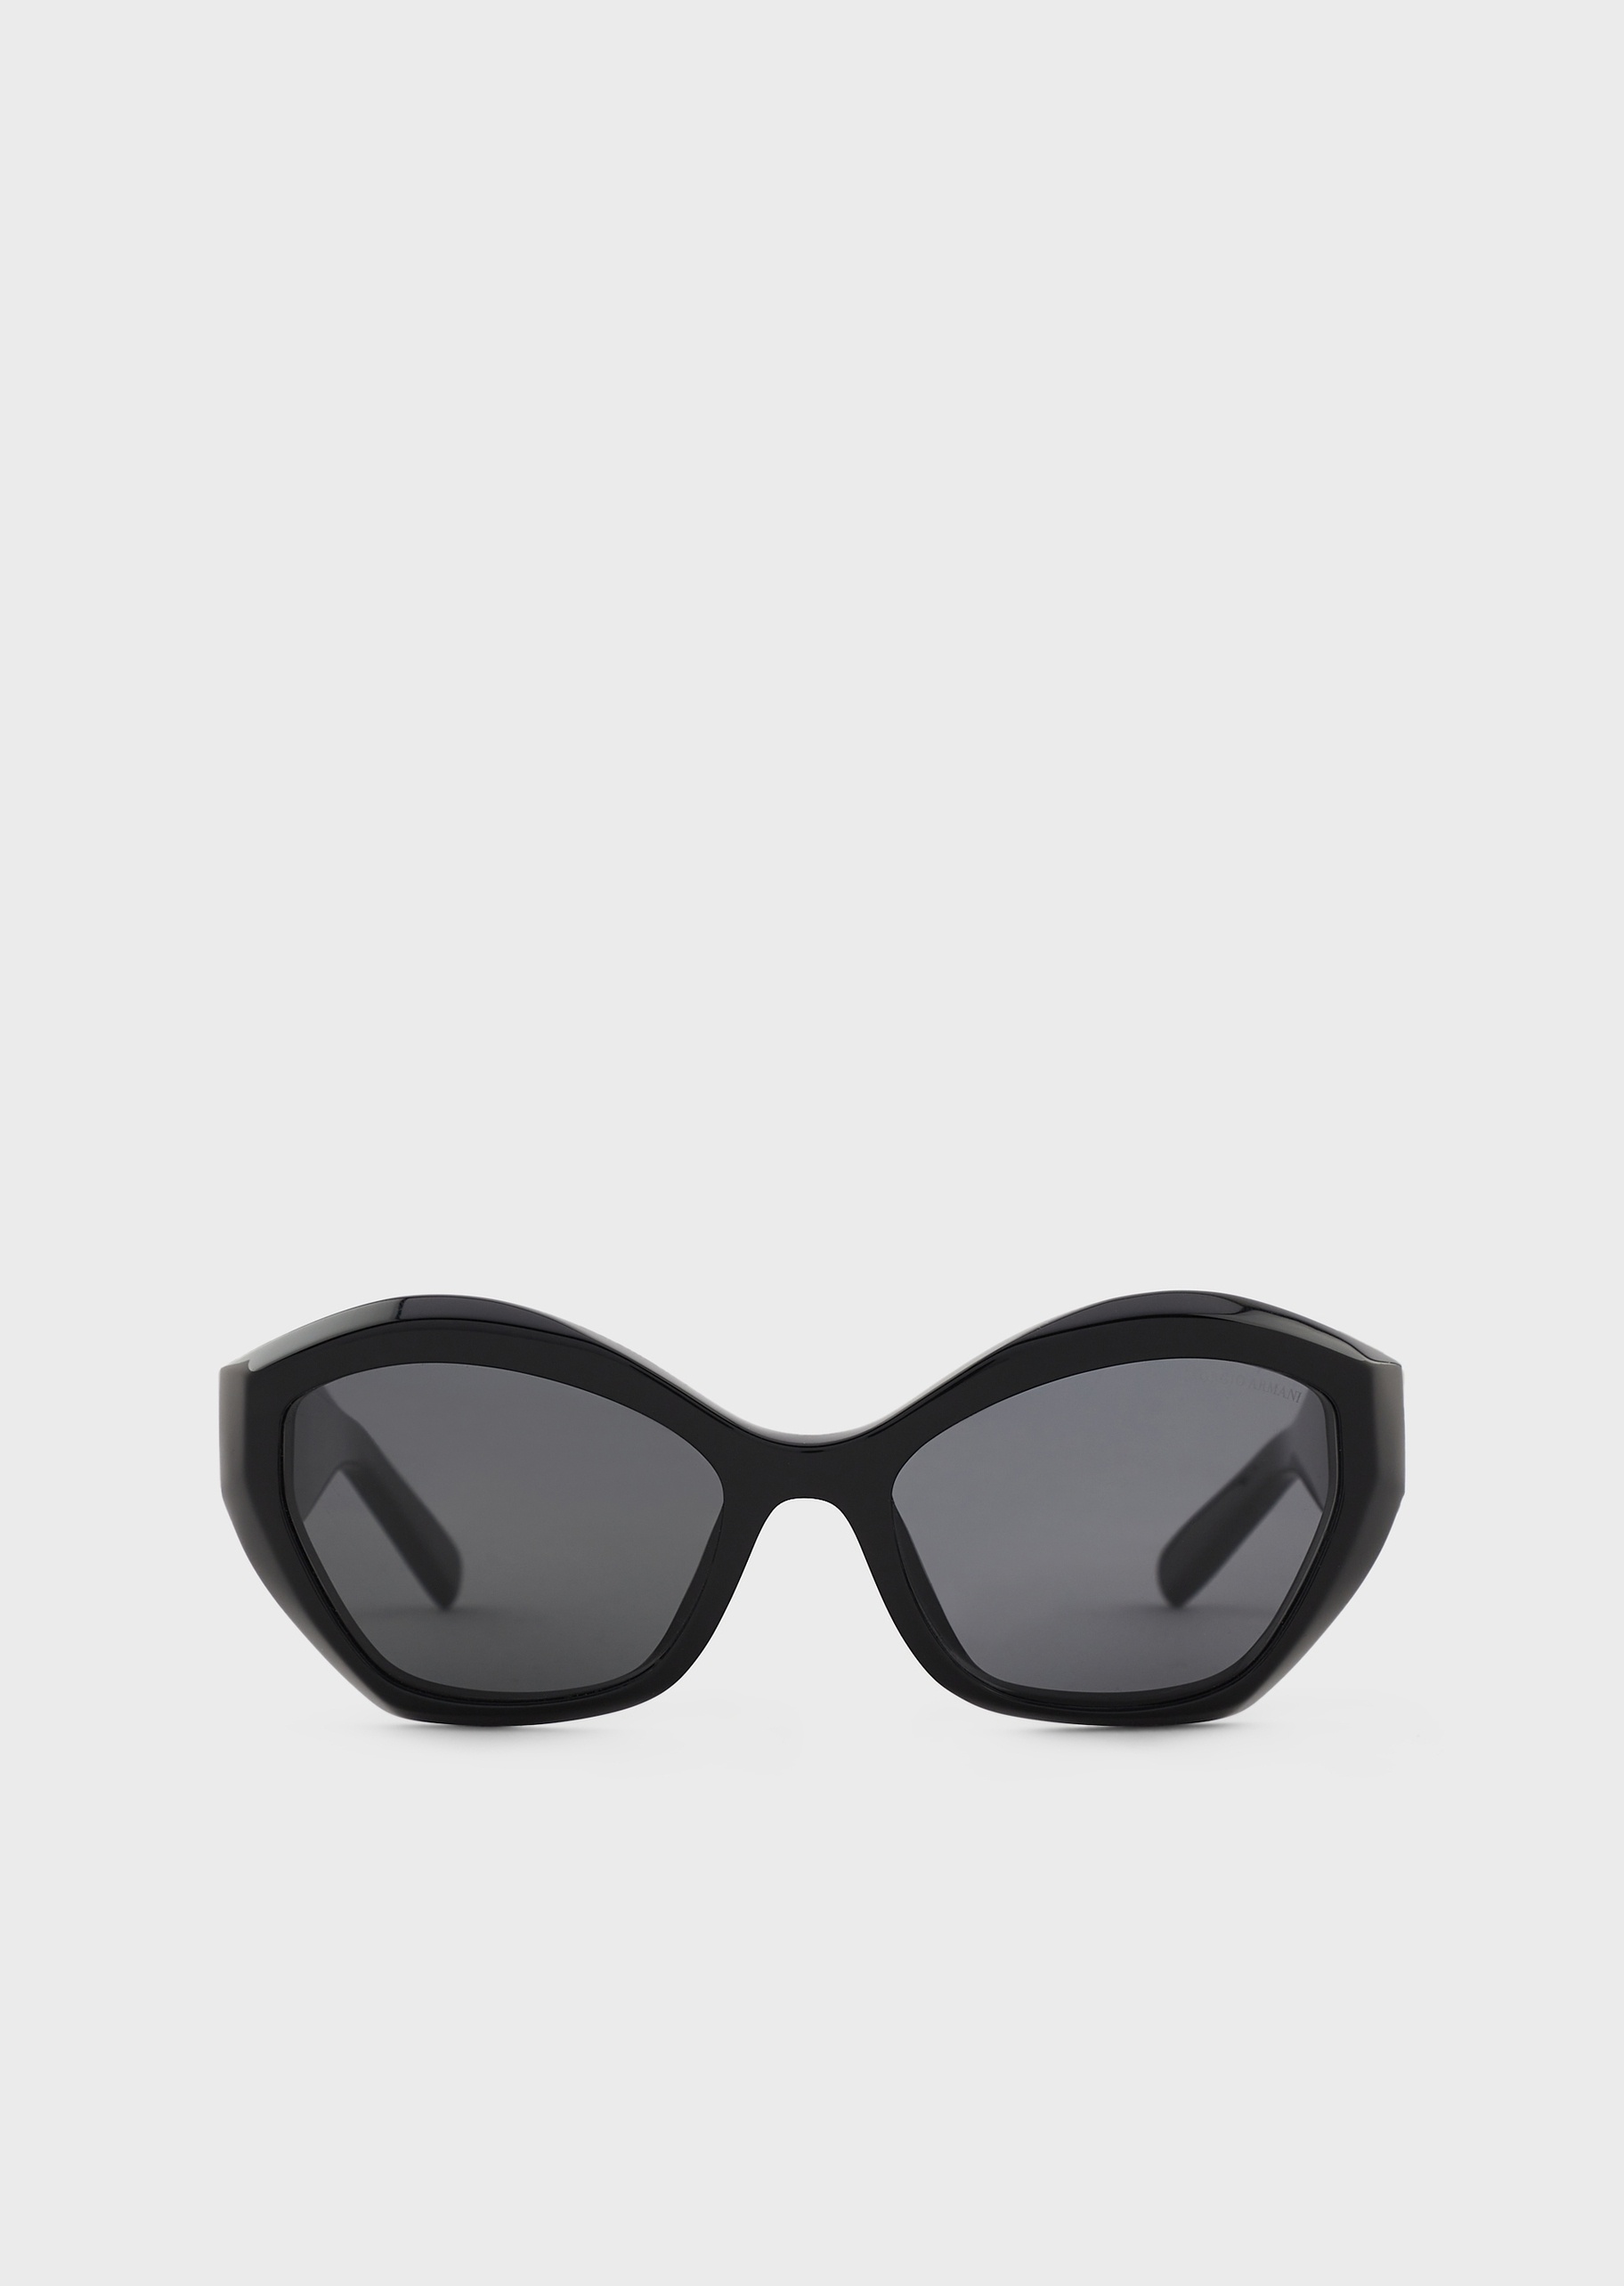 Giorgio Armani 女士菱形贝母蝴蝶框太阳眼镜